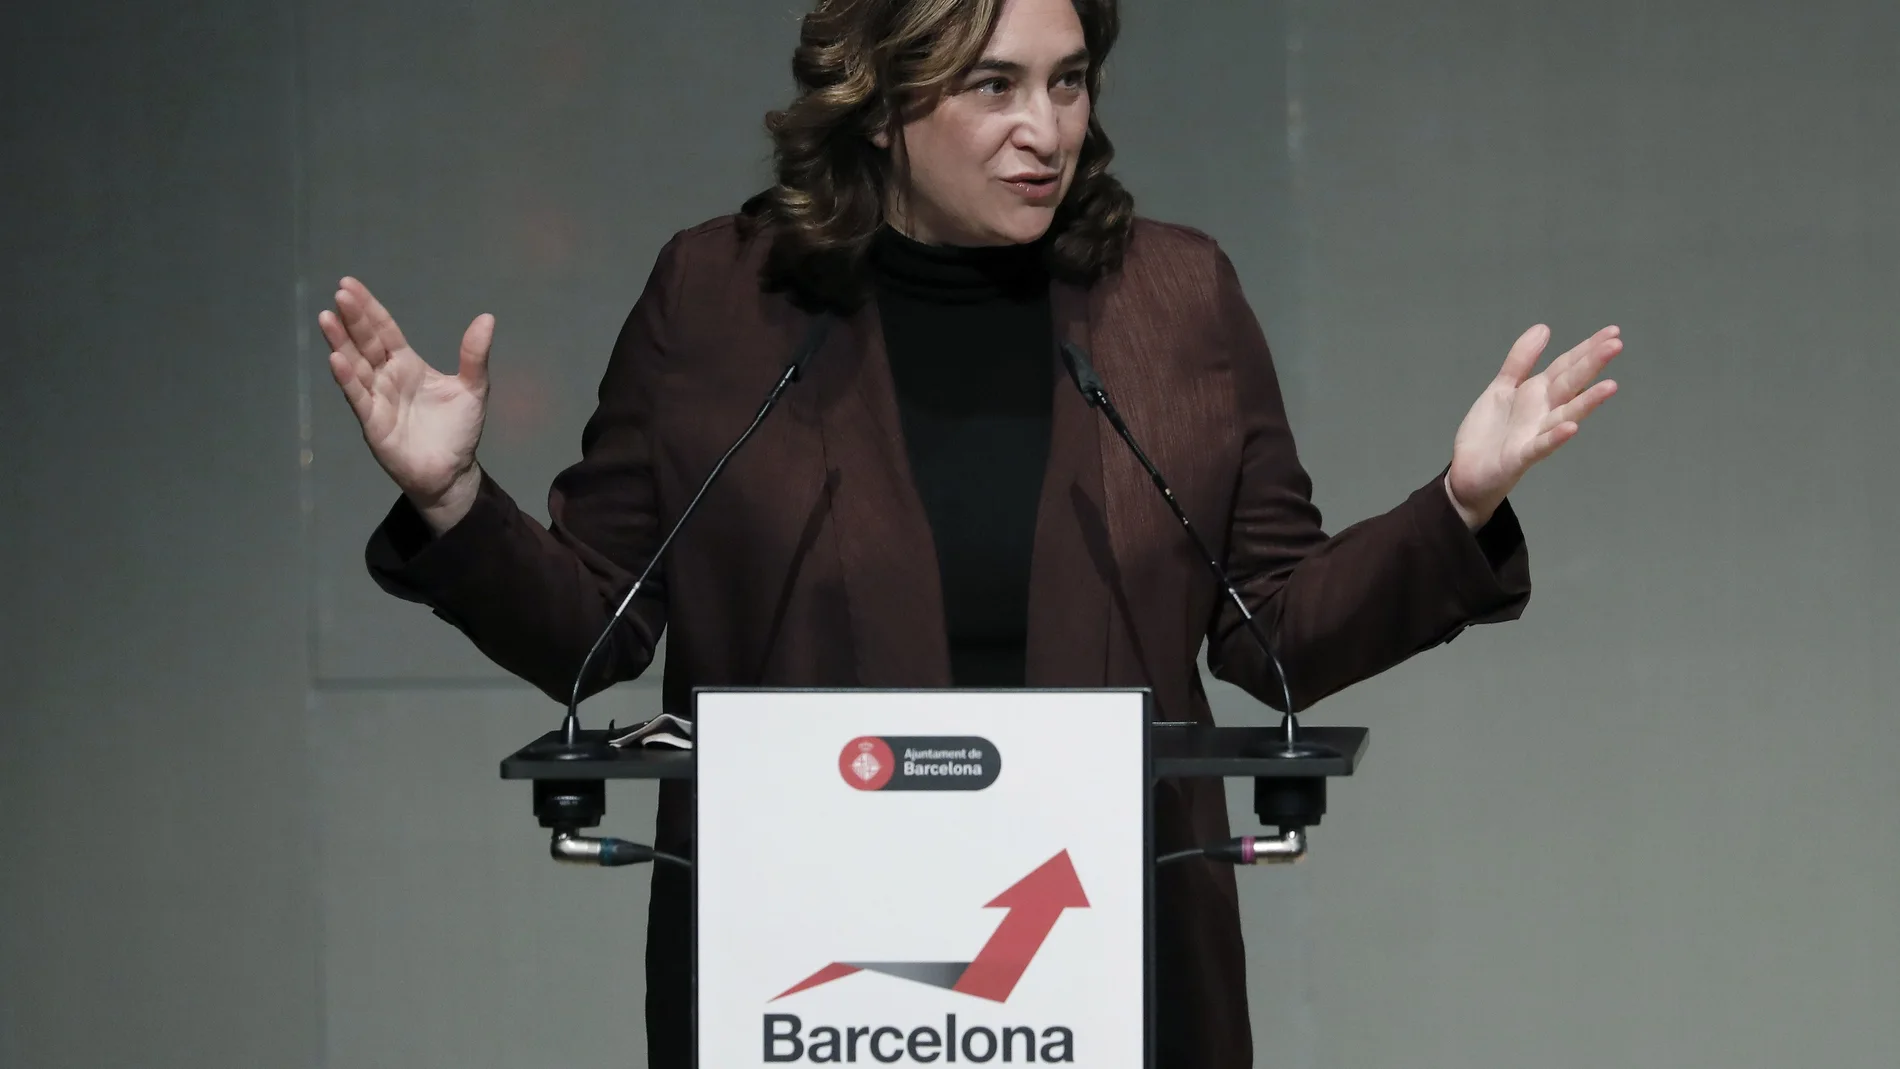 La alcaldesa de Barcelona, Ada Colau, durante la clausura de las jornadas "Barcelona reAct" para la reactivación económica de la capital catalana. EFE/Andreu Dalmau